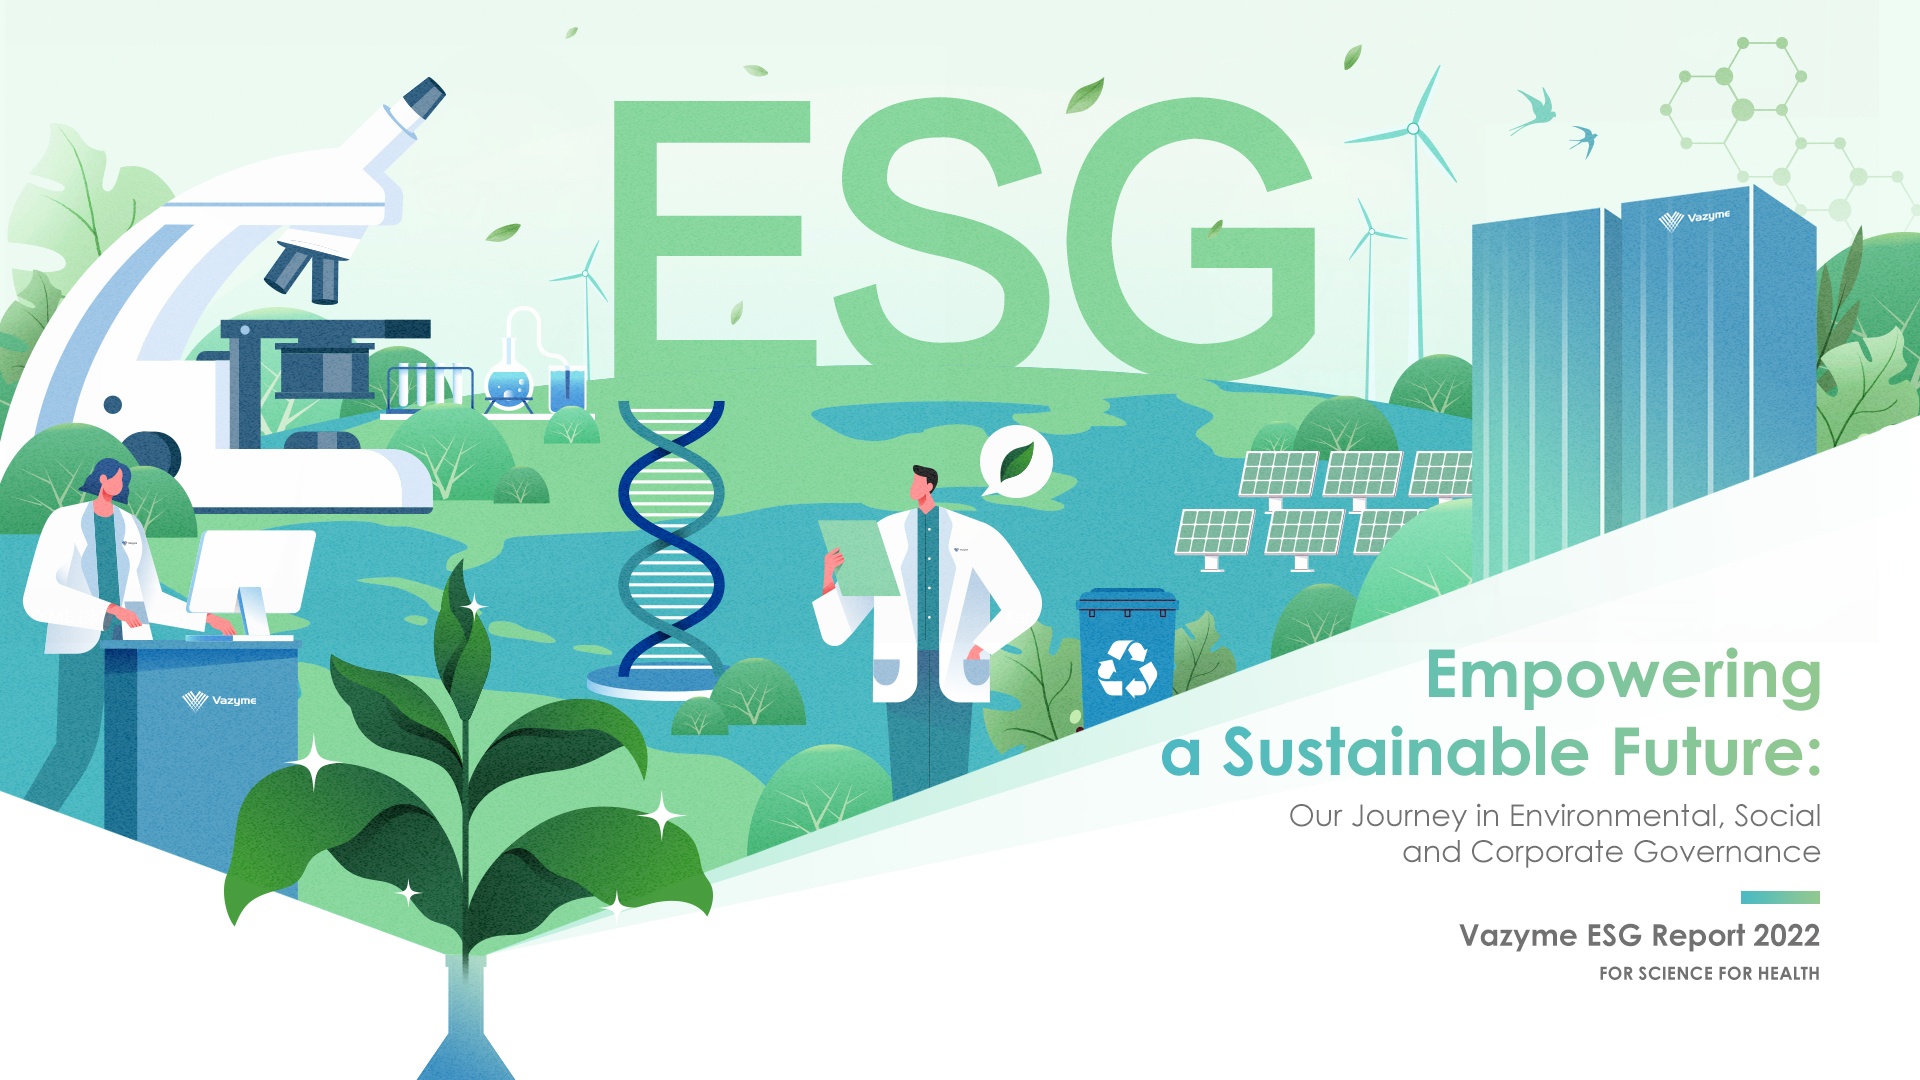 Vazyme 2022 ESG වාර්තාව නිකුත් කරයි: තිරසාර අනාගතයක් සවිබල ගැන්වීම